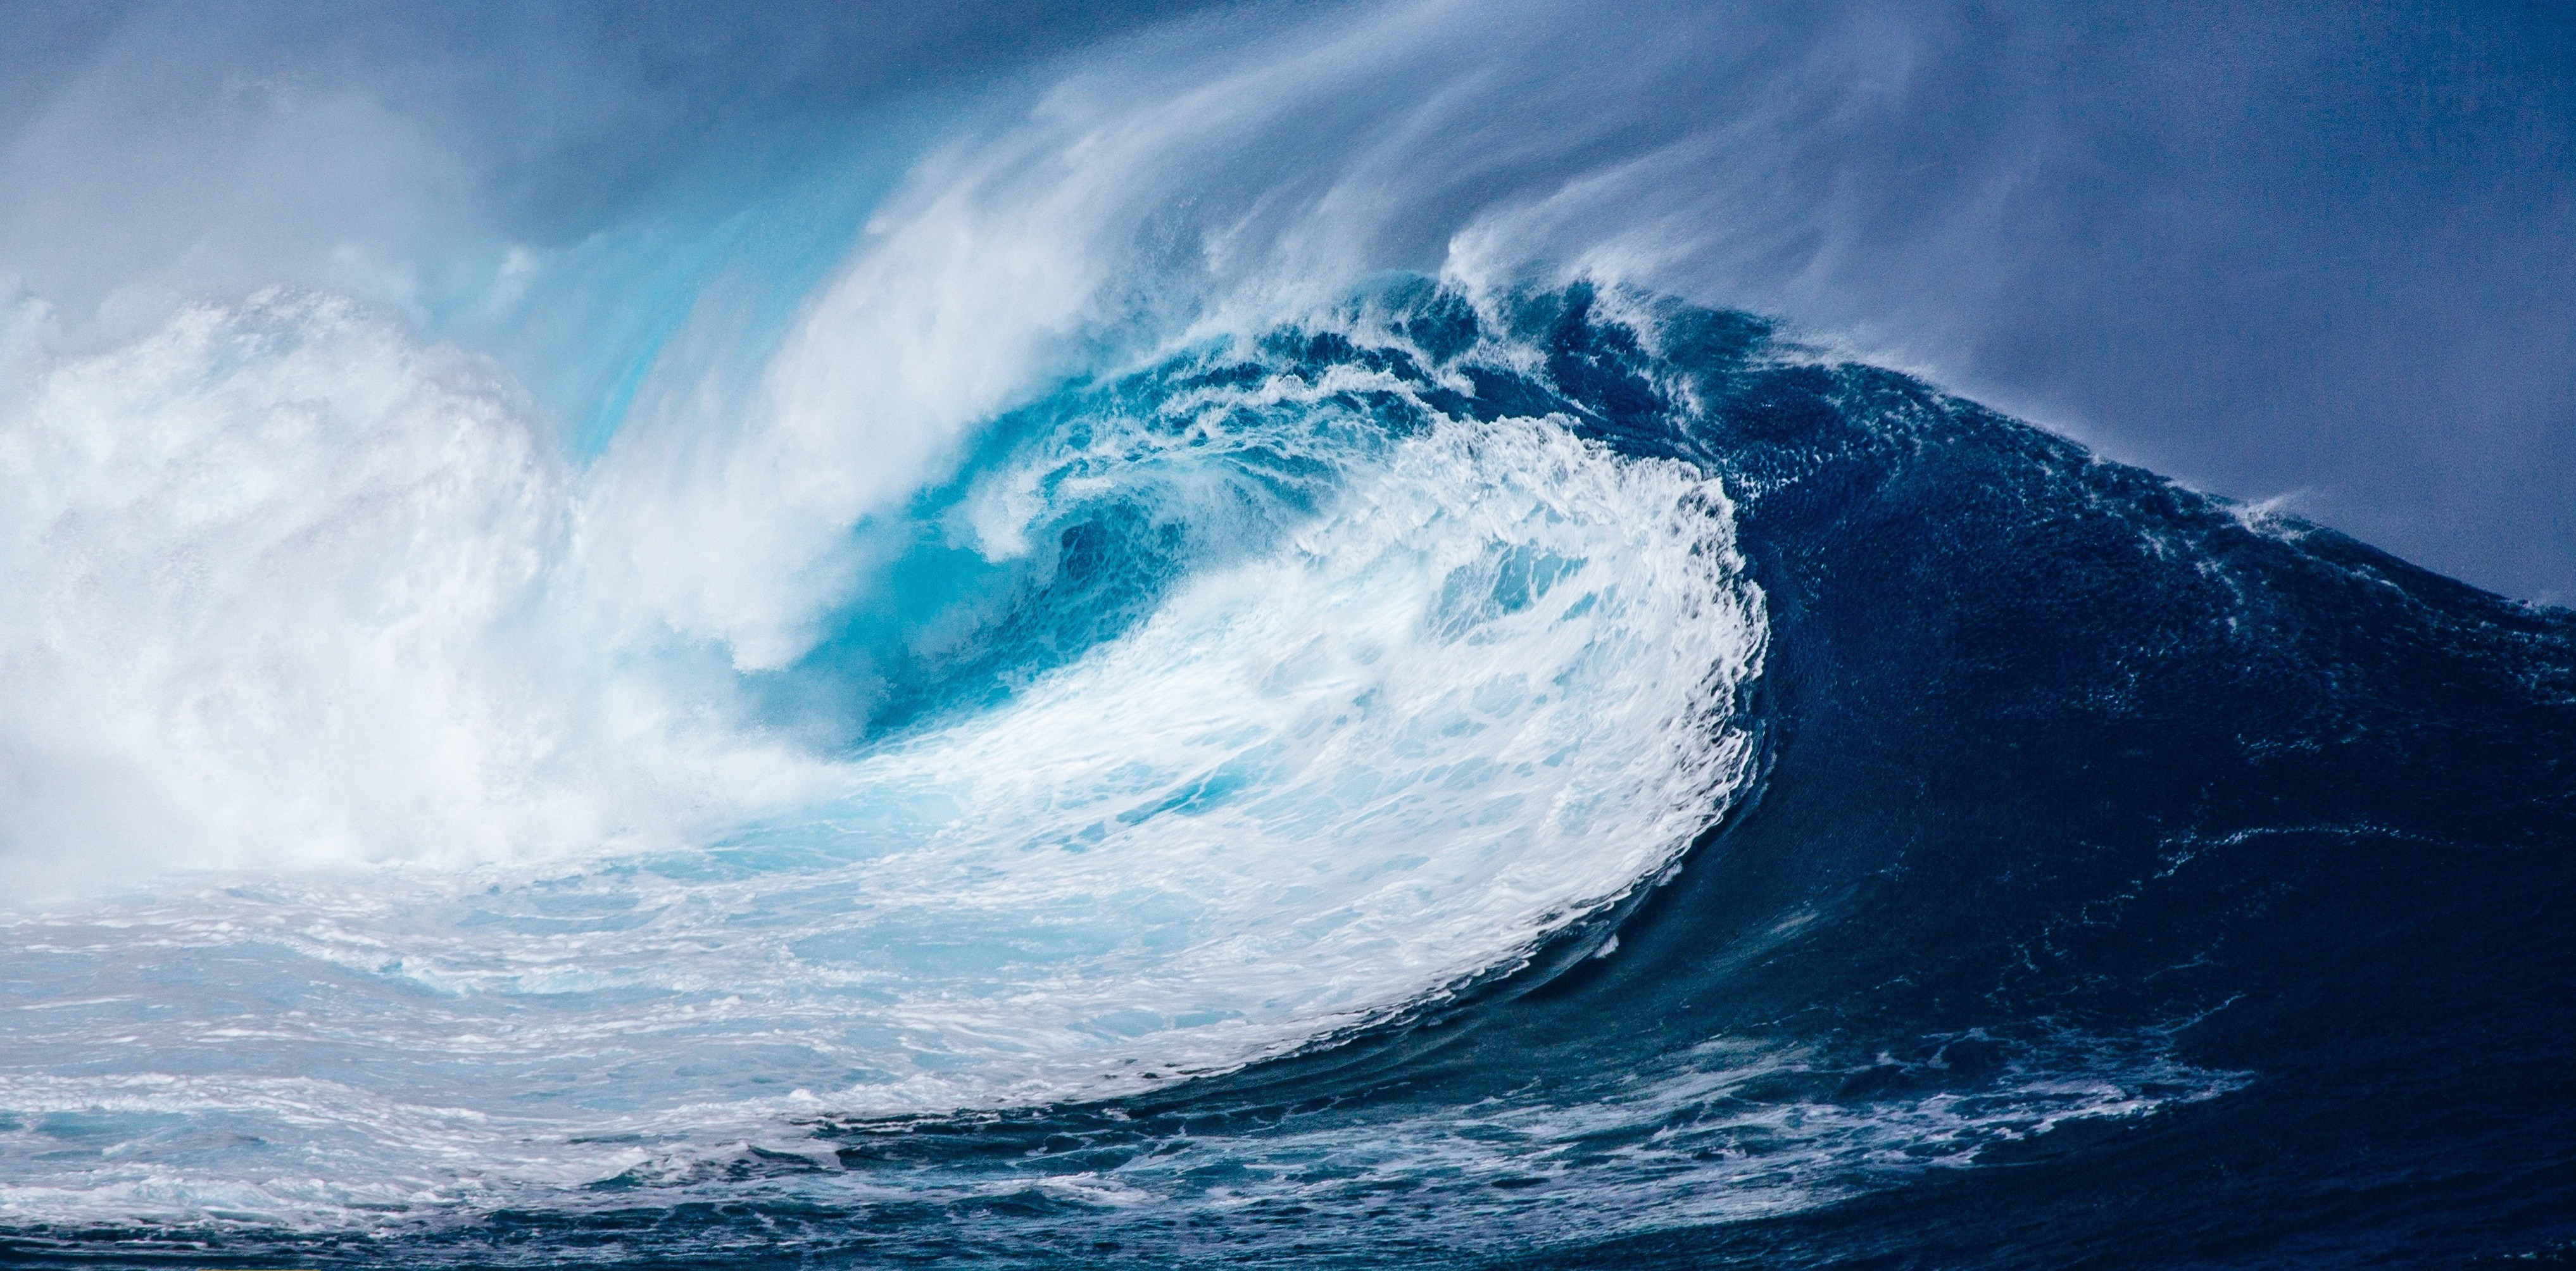  Wallpaper  wave ocean  4k  Nature 15789